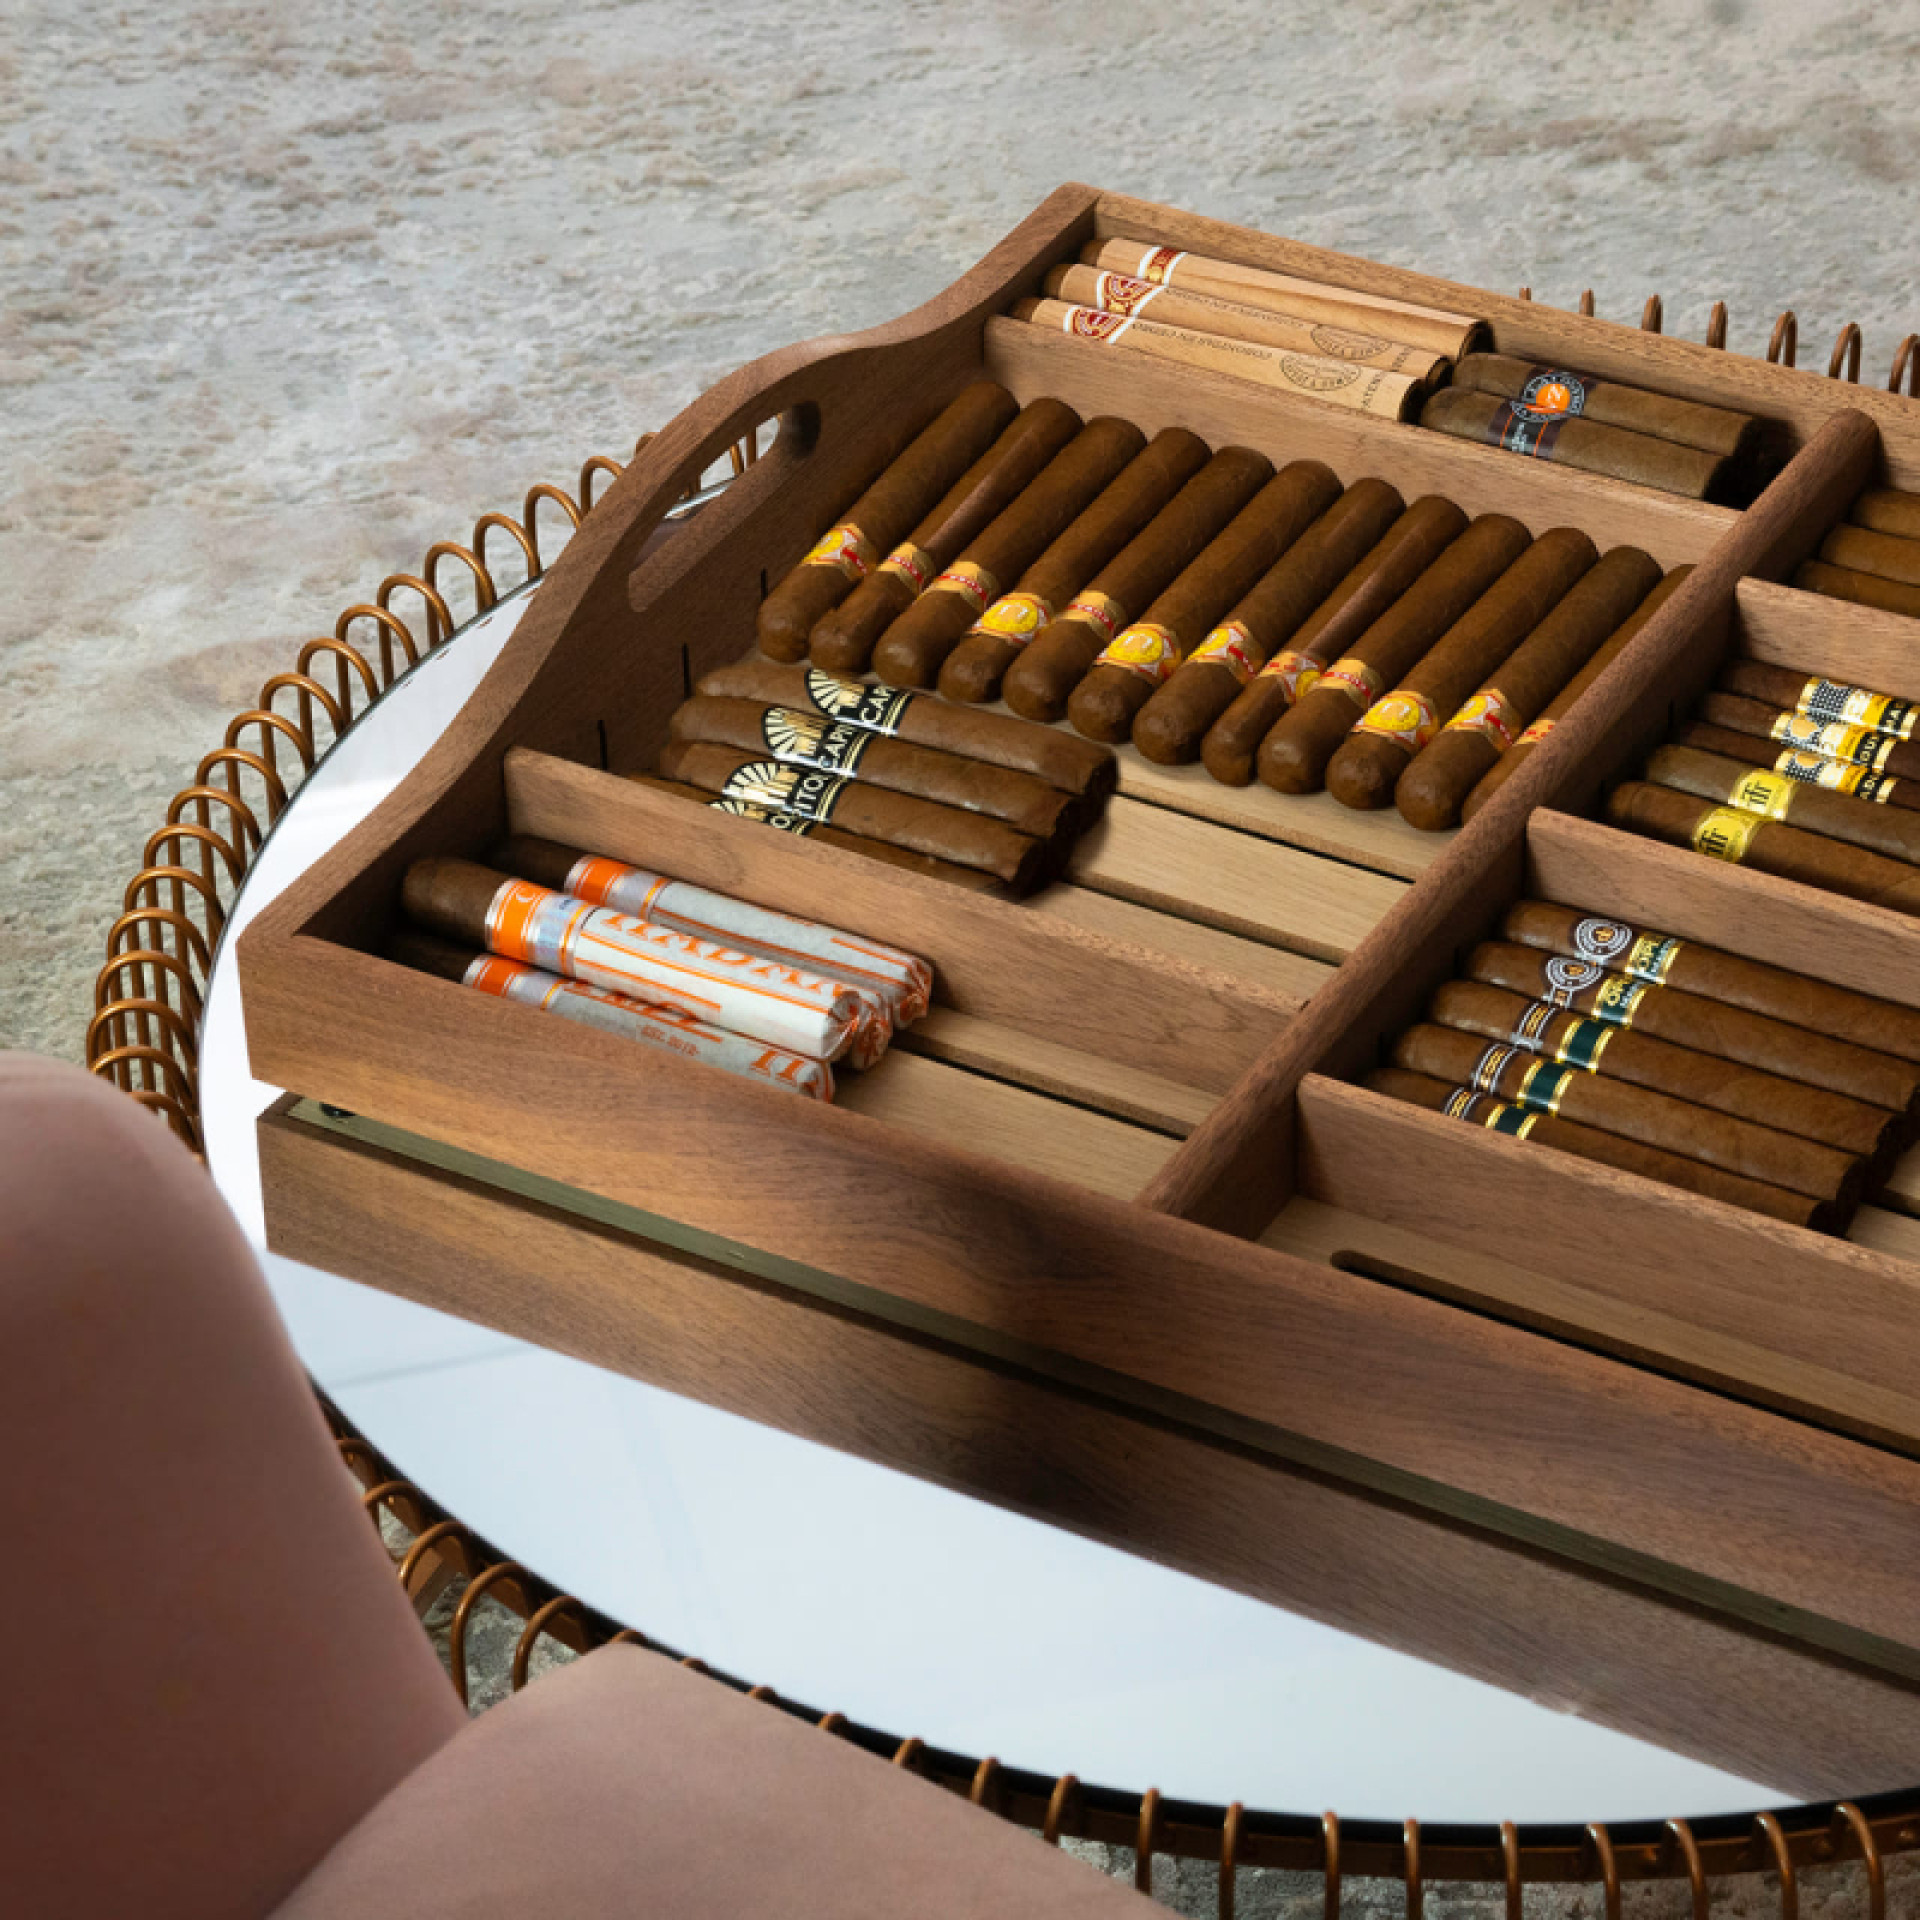 Ausziehbares Regal und herausnehmbares Zigarren-Serviertablett. Eine wunderschöne Präsentation von Zigarren, die Sie mit Ihren Gästen teilen können.